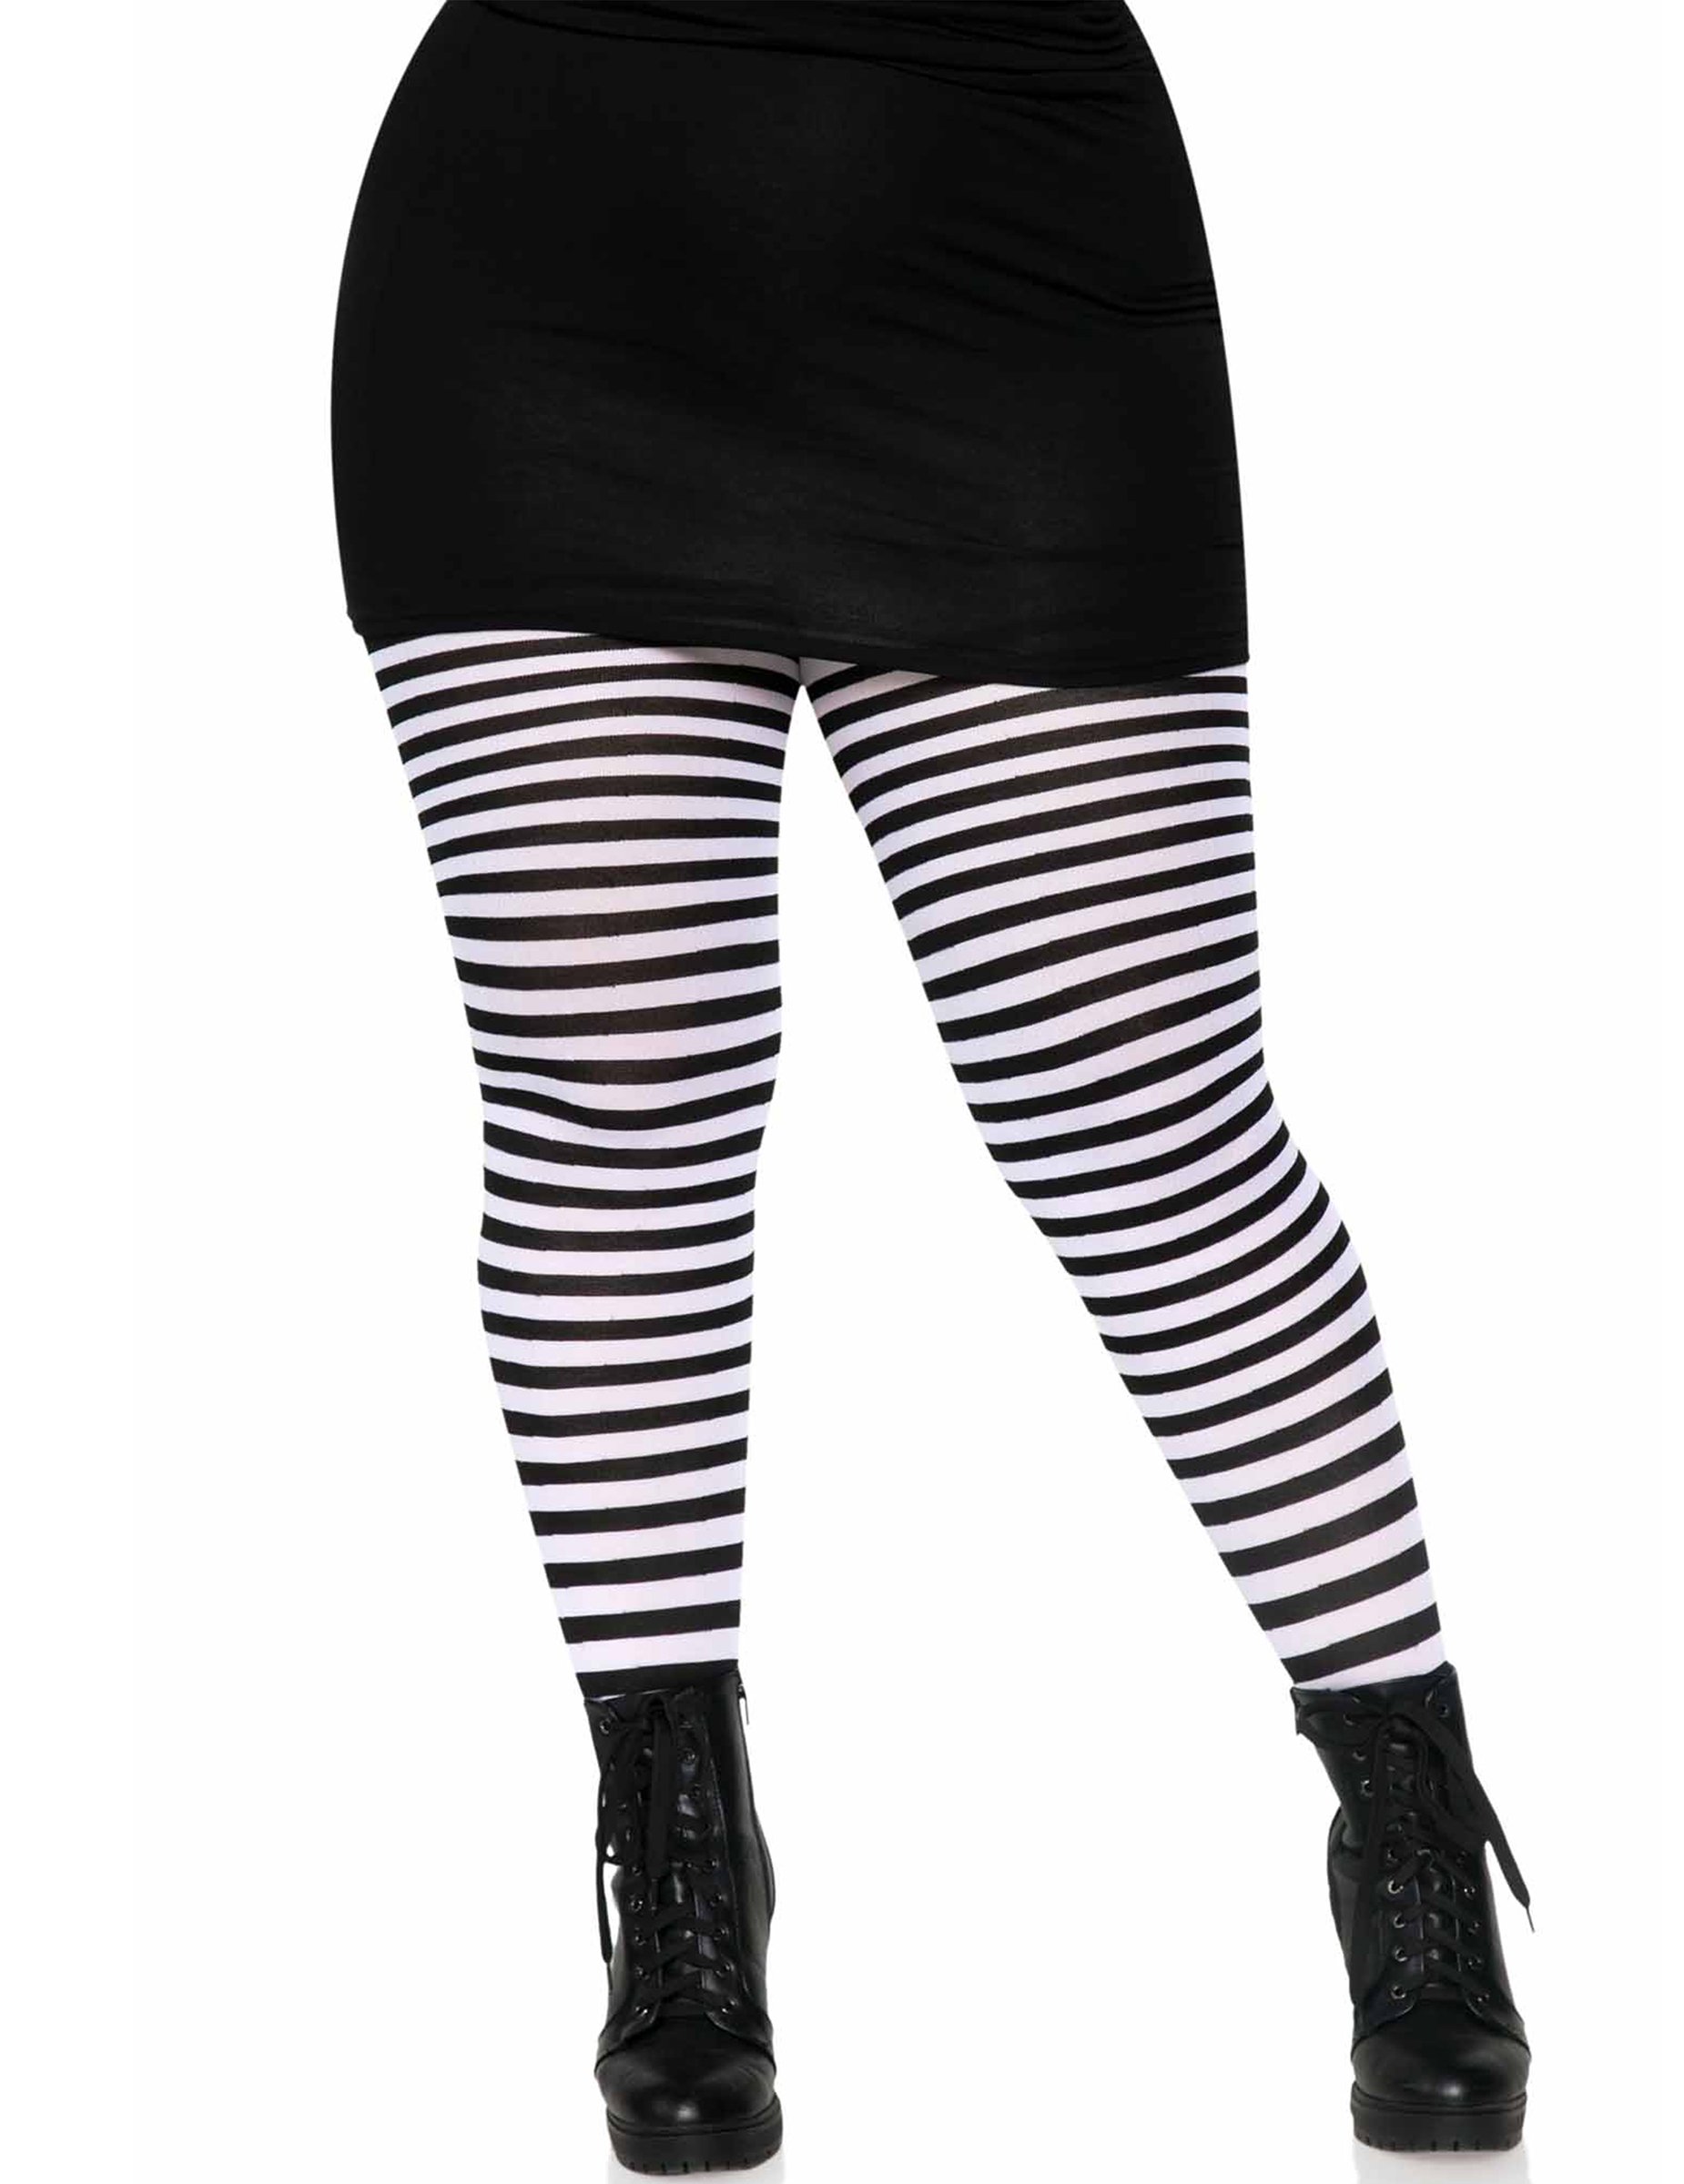 Gestreifte Strumpfhose in Plus Size Kostümaccessoire weiß-schwarz von LEG-AVENUE